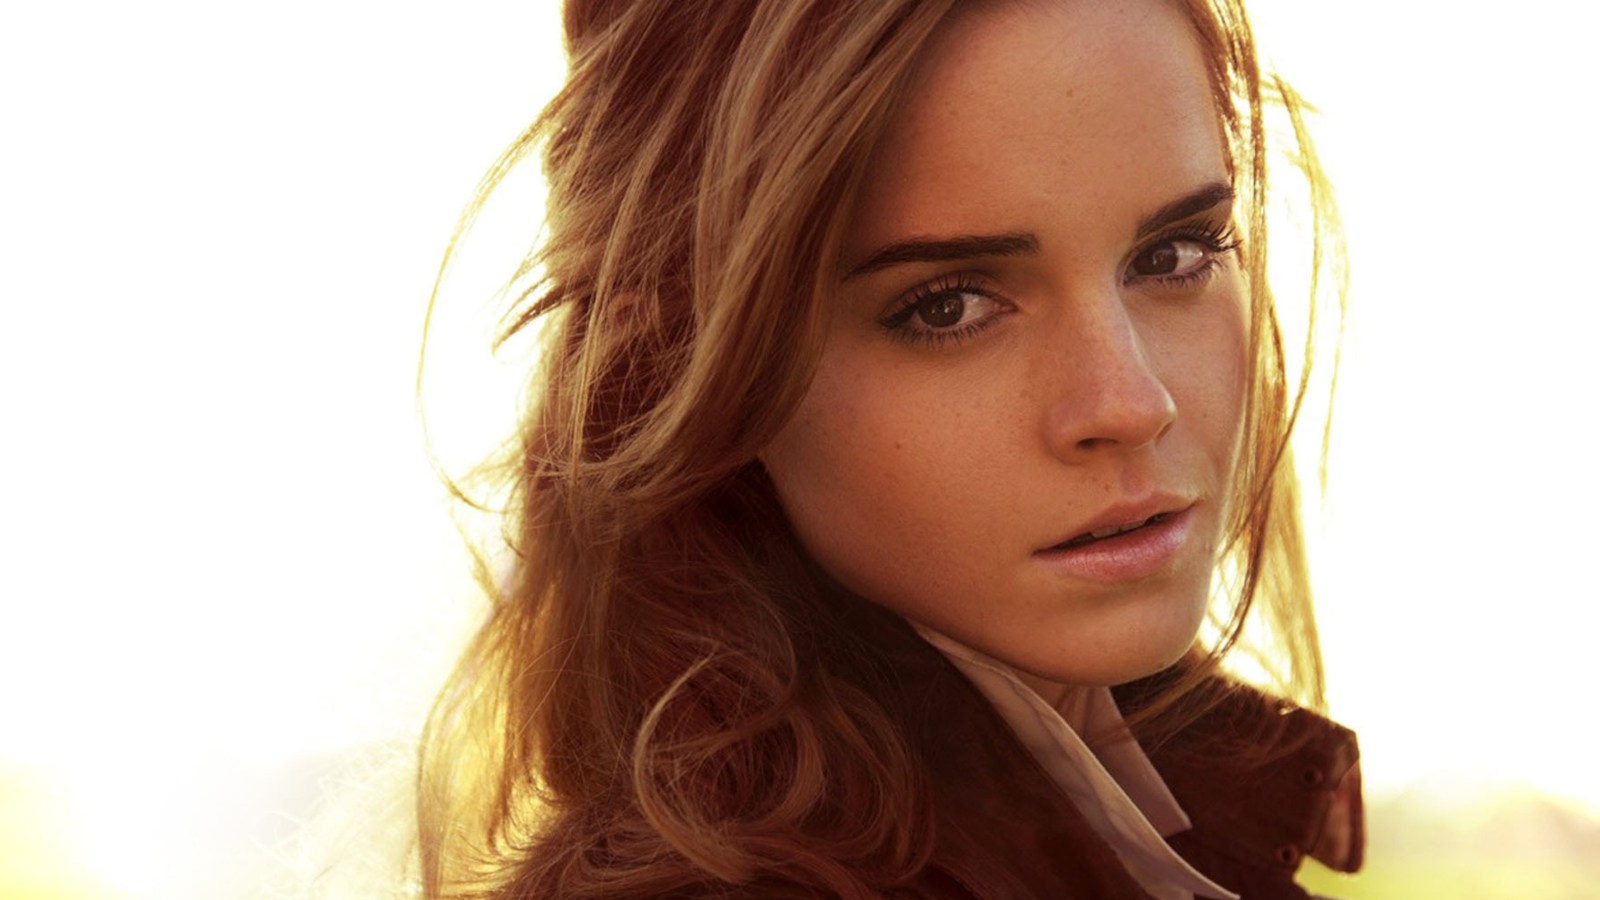 Cute Emma Watson wallpaper 1600x900